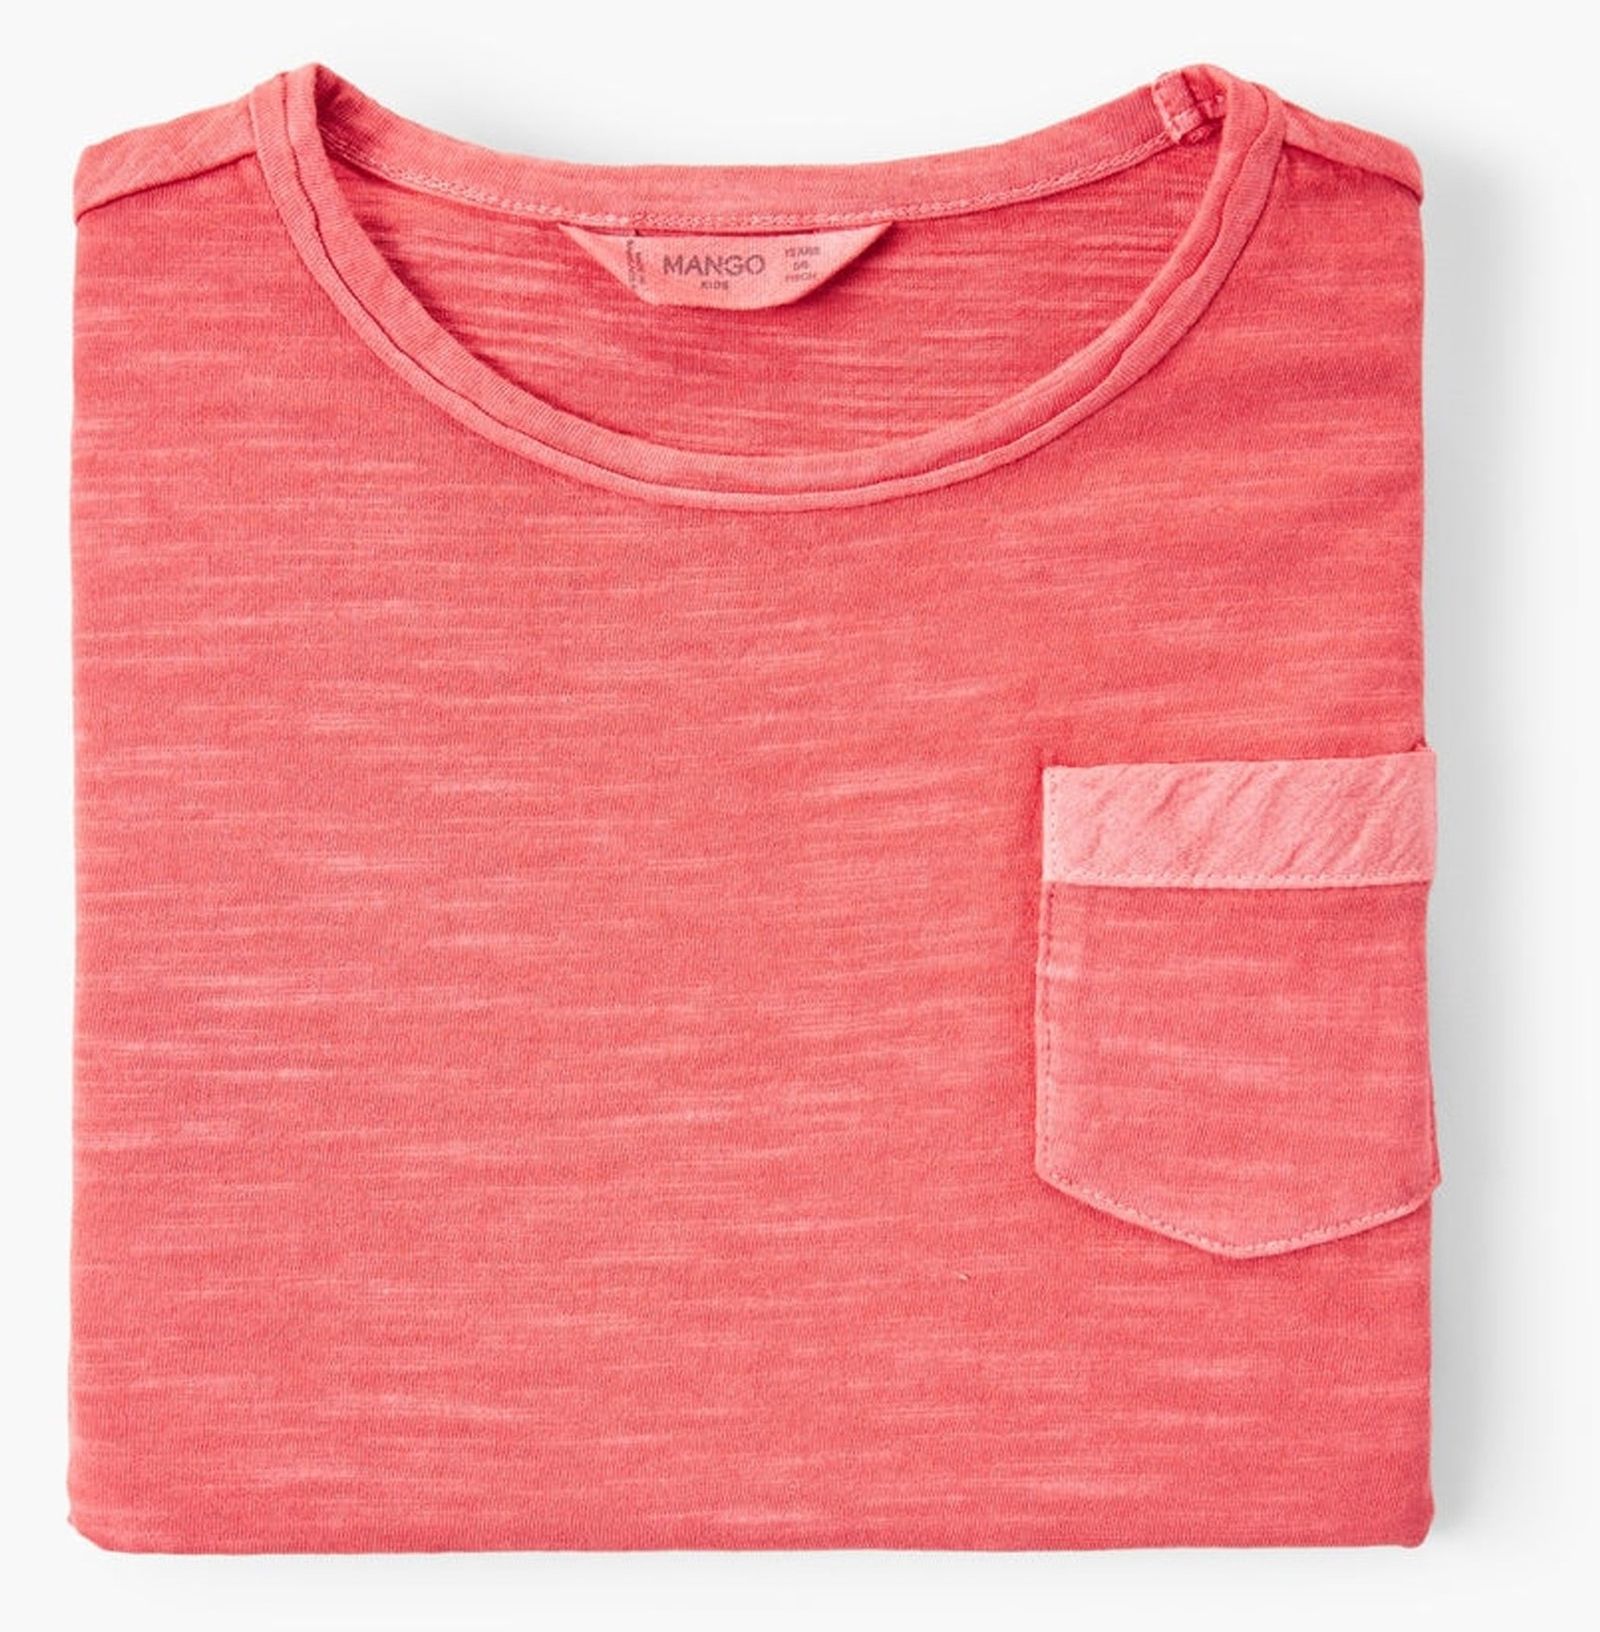 تی شرت نخی یقه گرد پسرانه - مانگو - قرمز - 5